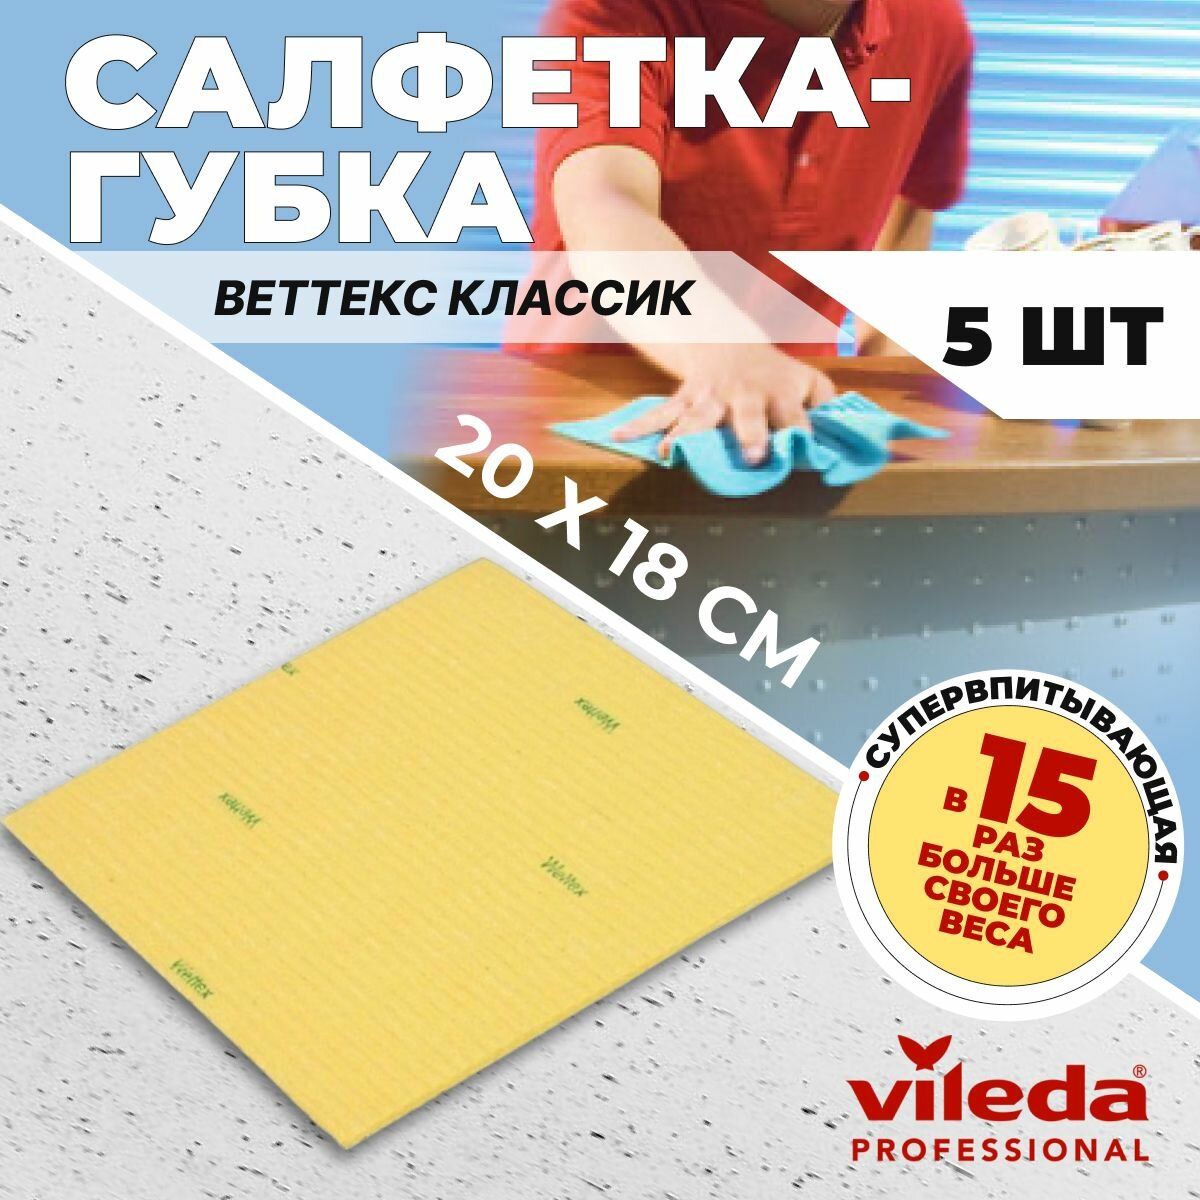 Салфетка-губка для уборки Vileda Веттекс Классик 20х17 см, желтая, 5 шт.